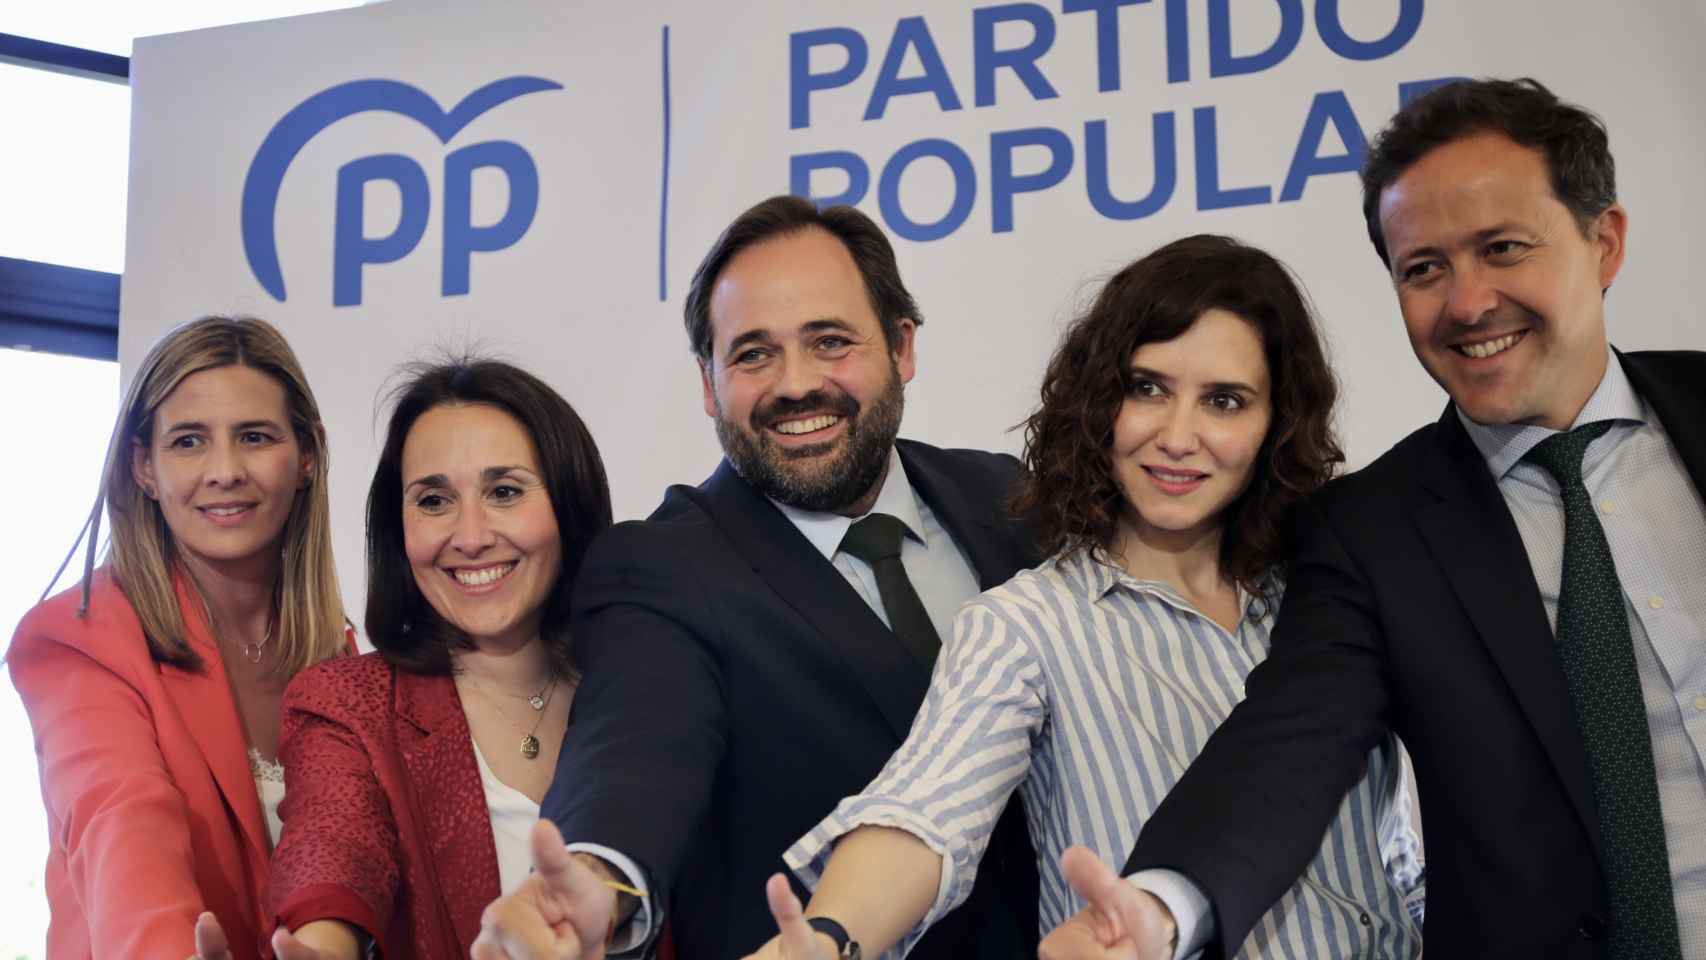 Carolina Agudo, Alejandra Hernández, Paco Núñez, Isabel Díaz Ayuso y Carlos Velázquez en Illescas (Toledo). Foto: PP CLM.